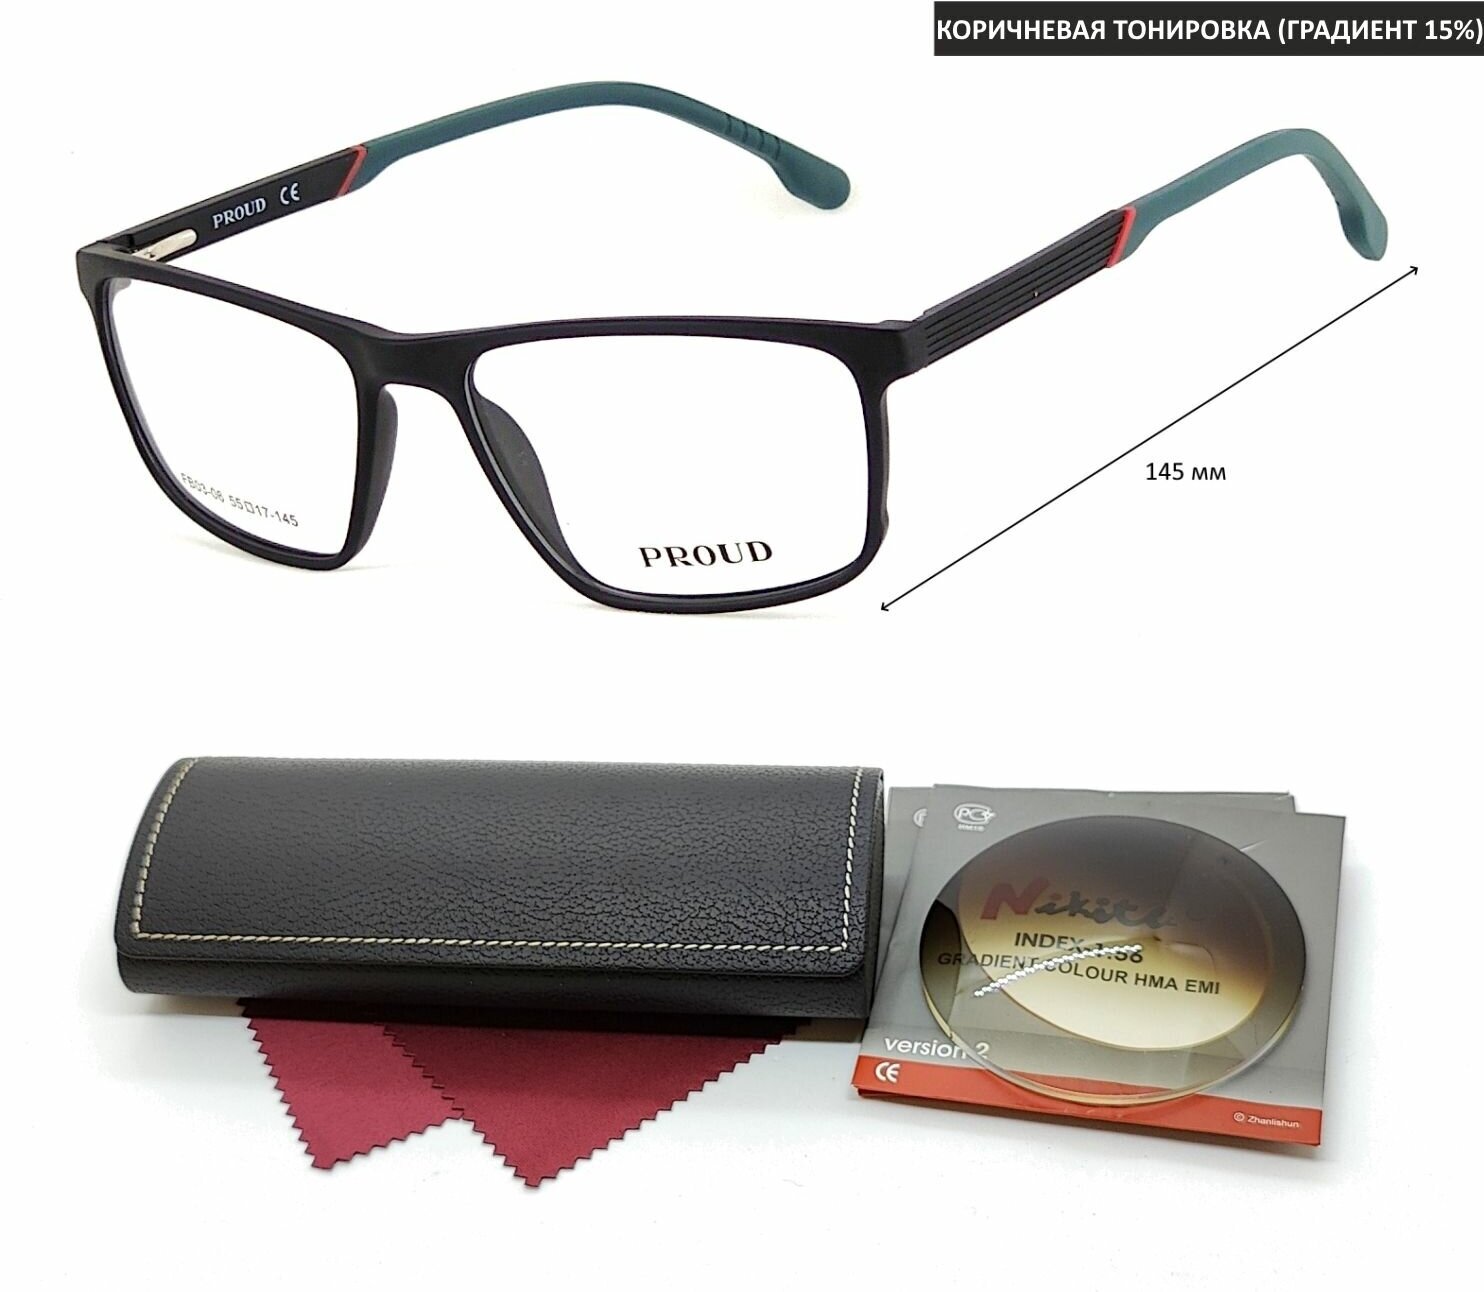 Тонированные очки с футляром на магните PROUD мод. FB03-06 Цвет 1 с линзами NIKITA 1.56 GRADIENT BROWN, HMA/EMI -2.50 РЦ 62-64